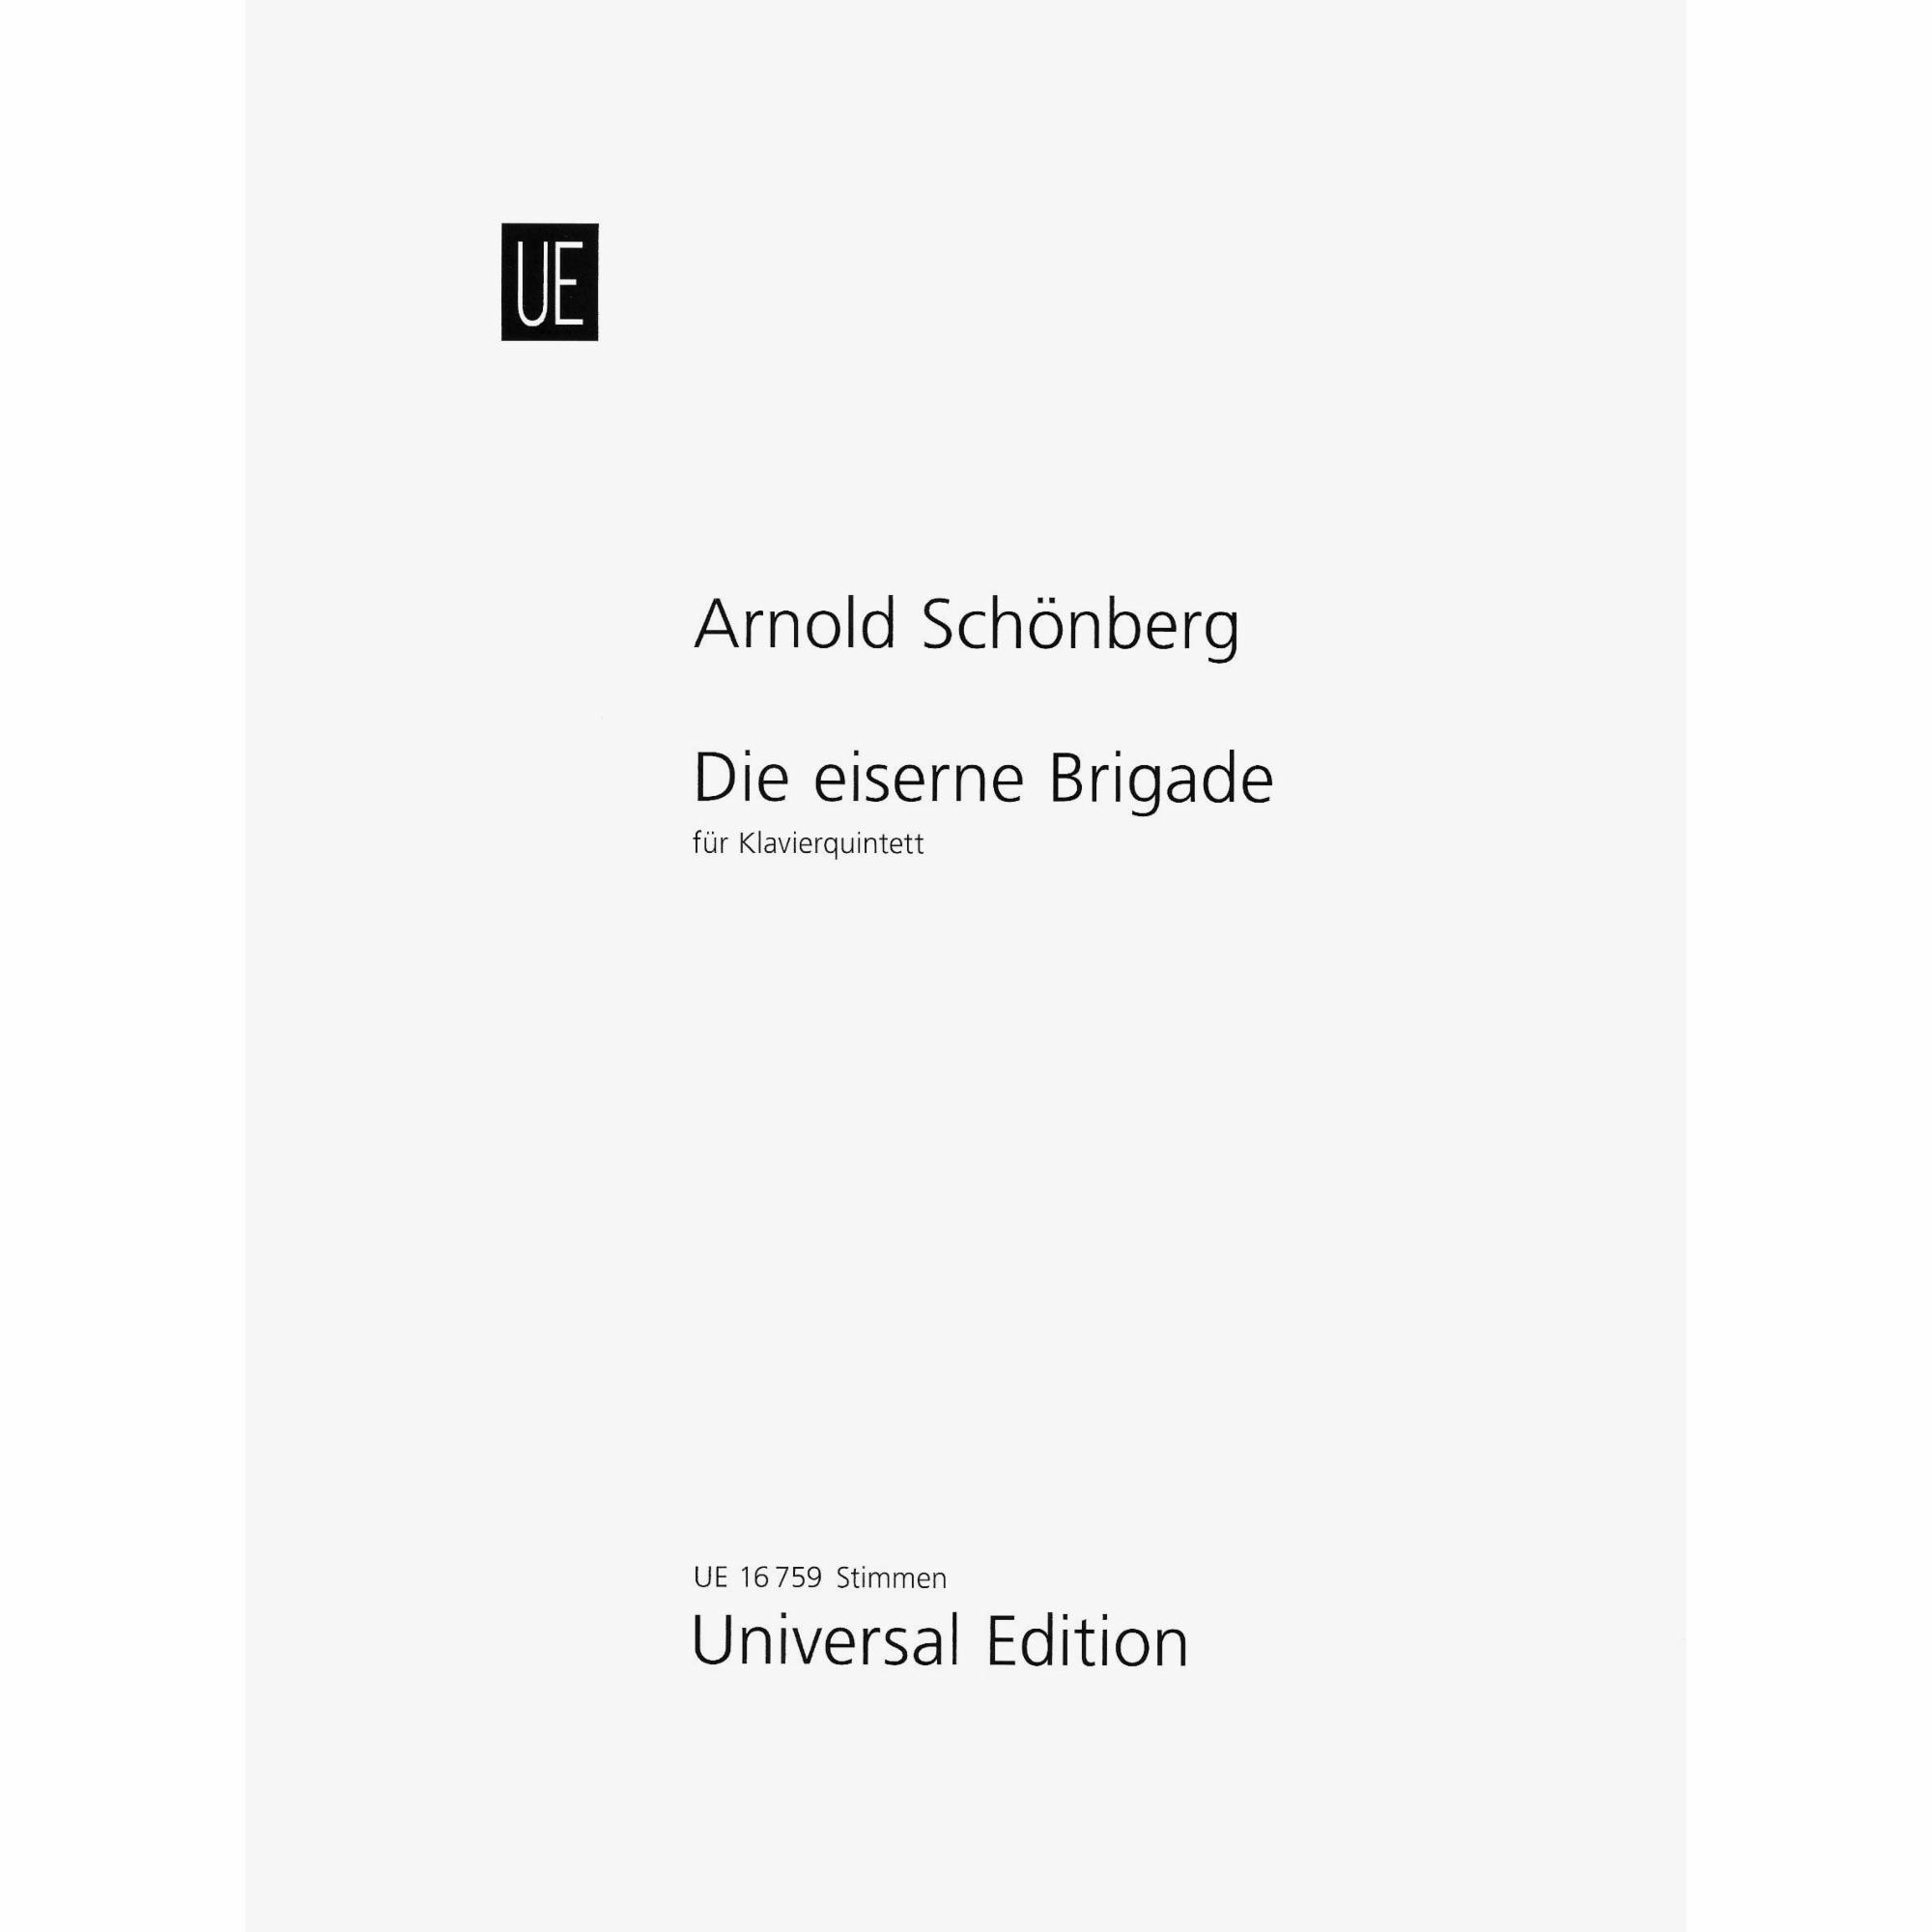 Schoenberg -- Die eiserne Brigade for Piano Quintet